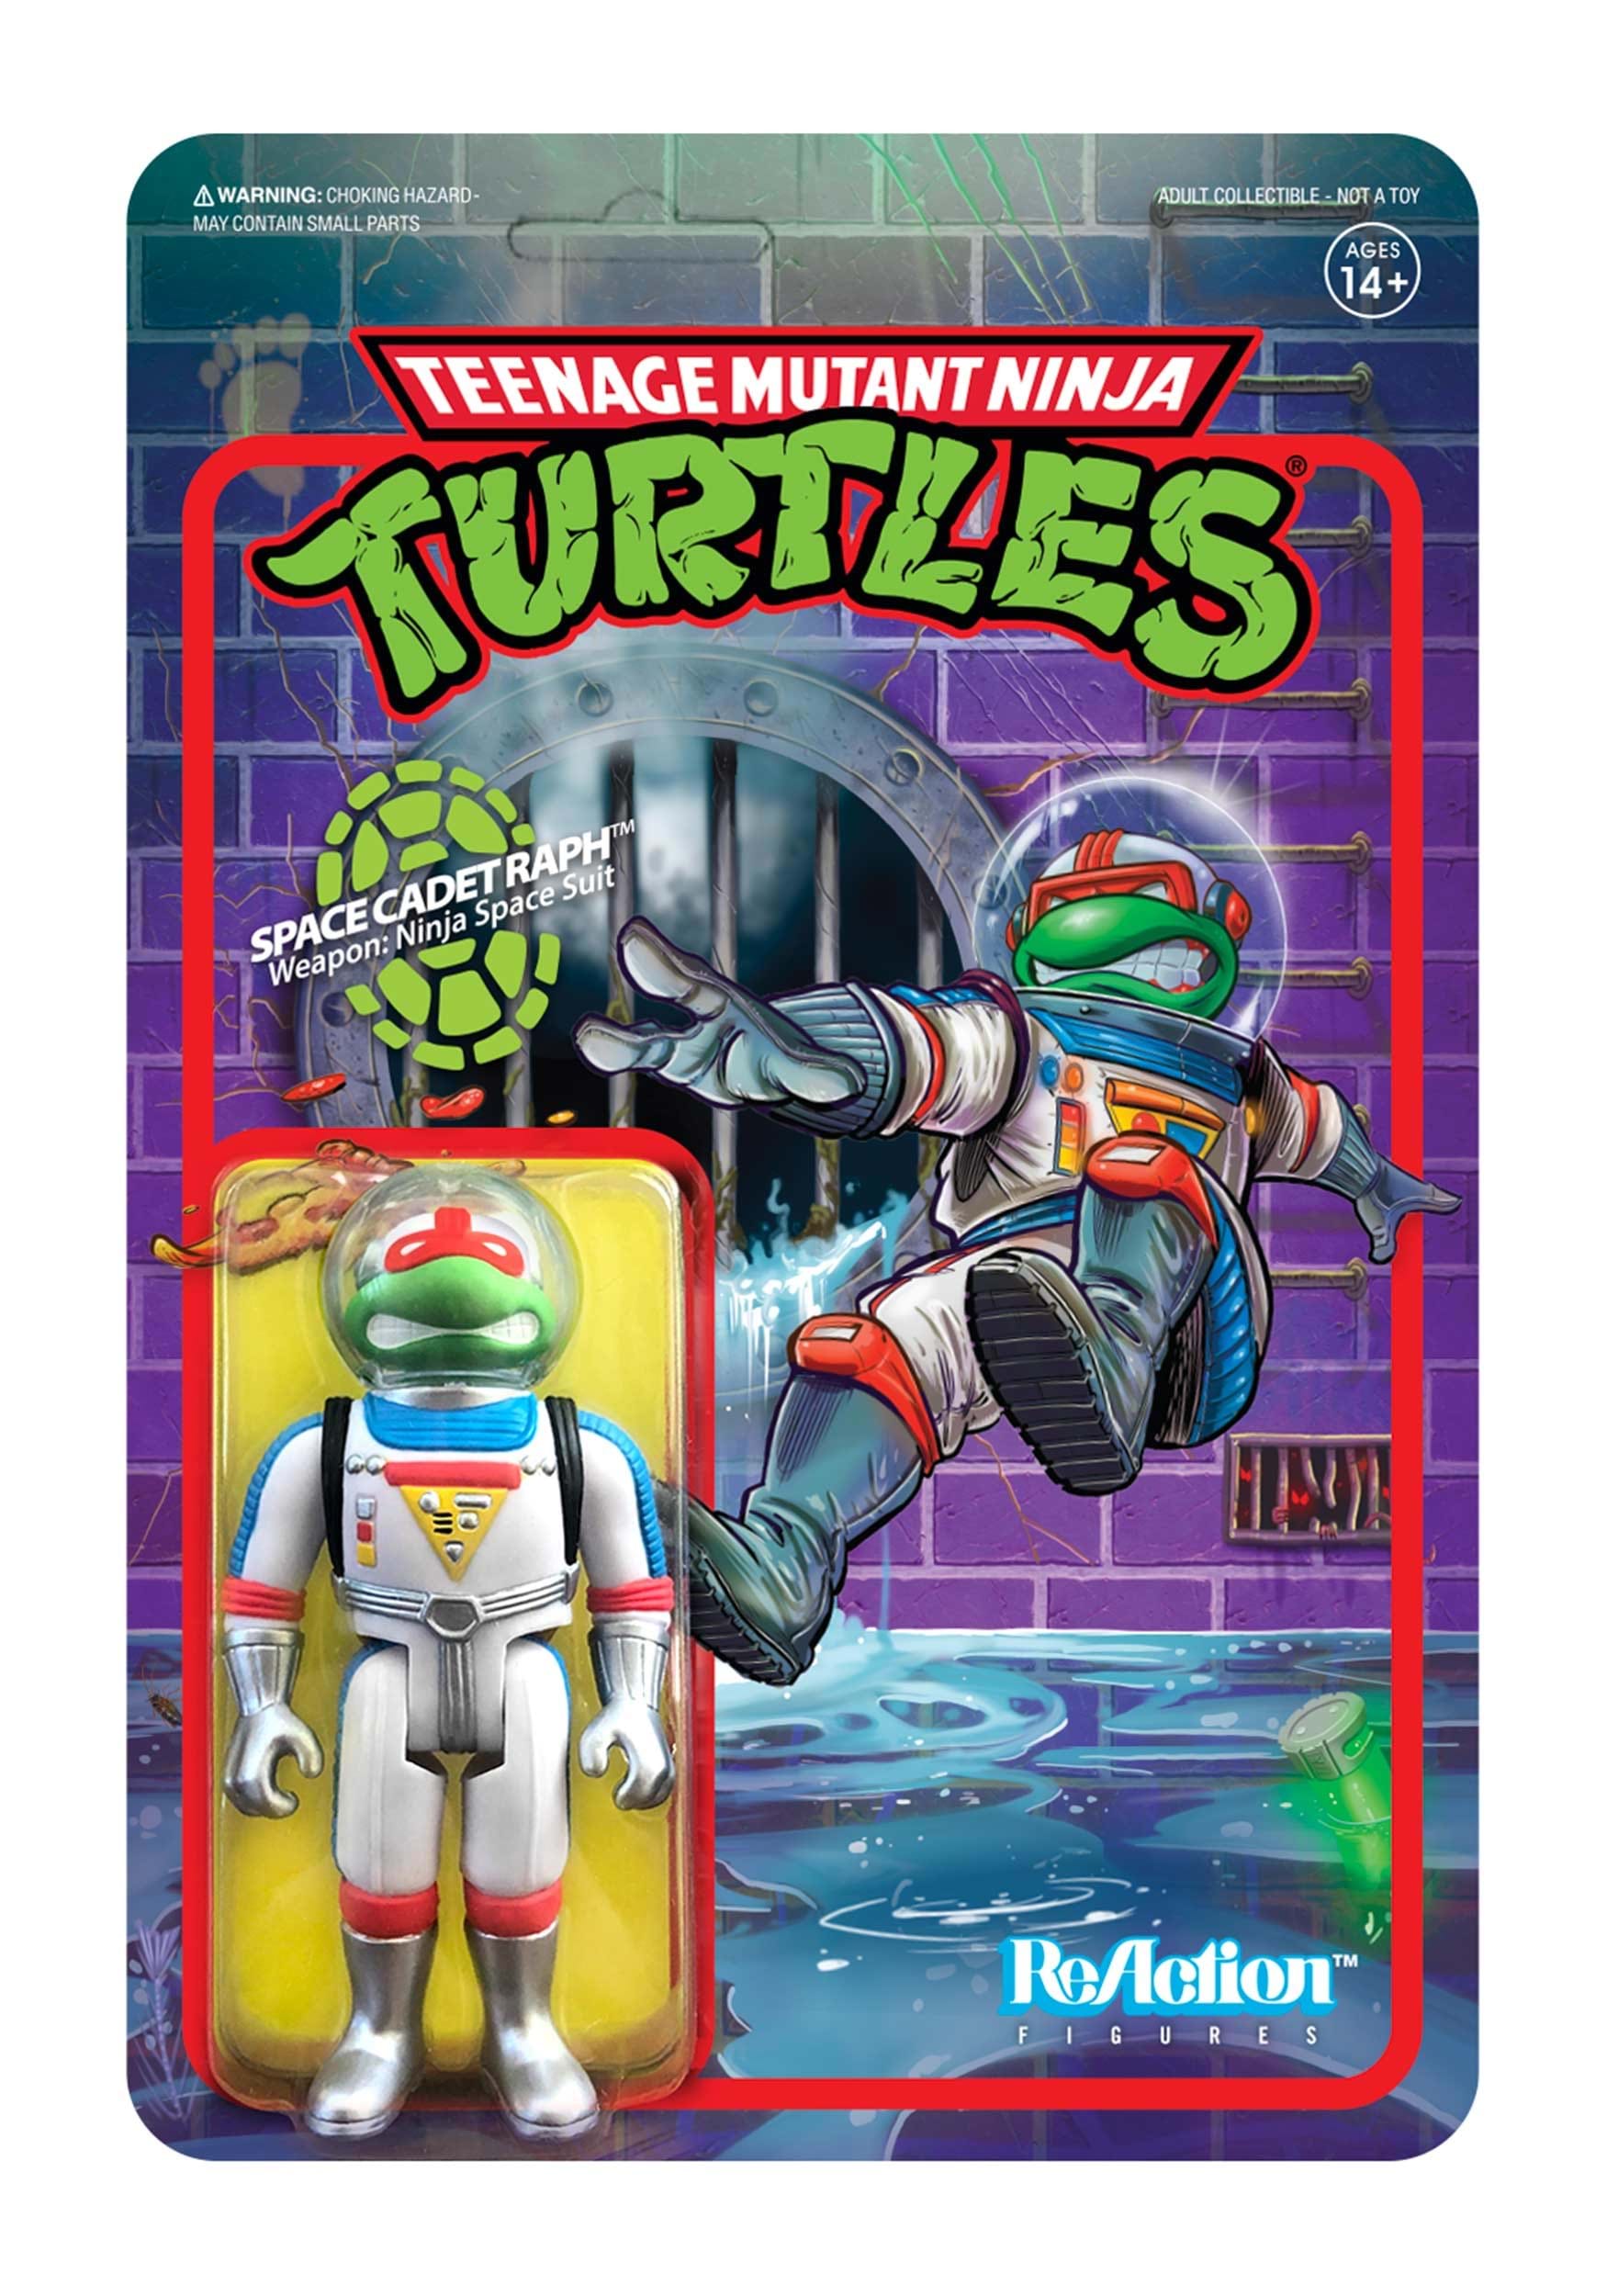 Teenage Mutant Ninja Turtles Space Cadet Raphael ReAction Figure